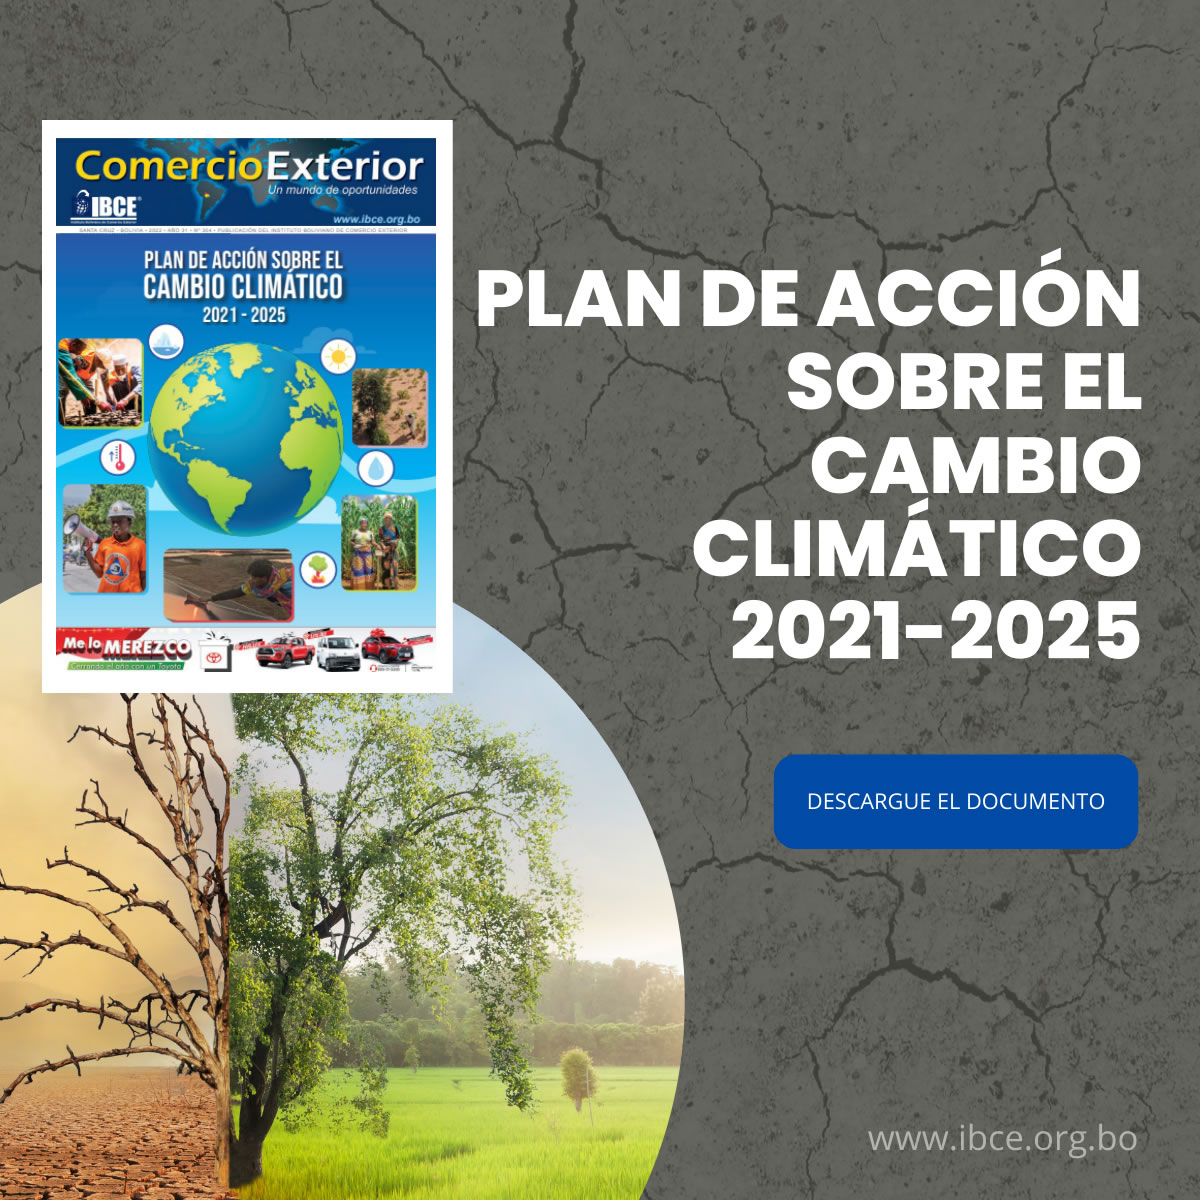 PLAN DE ACCIÓN SOBRE EL CAMBIO CLIMÁTICO 2021-2025